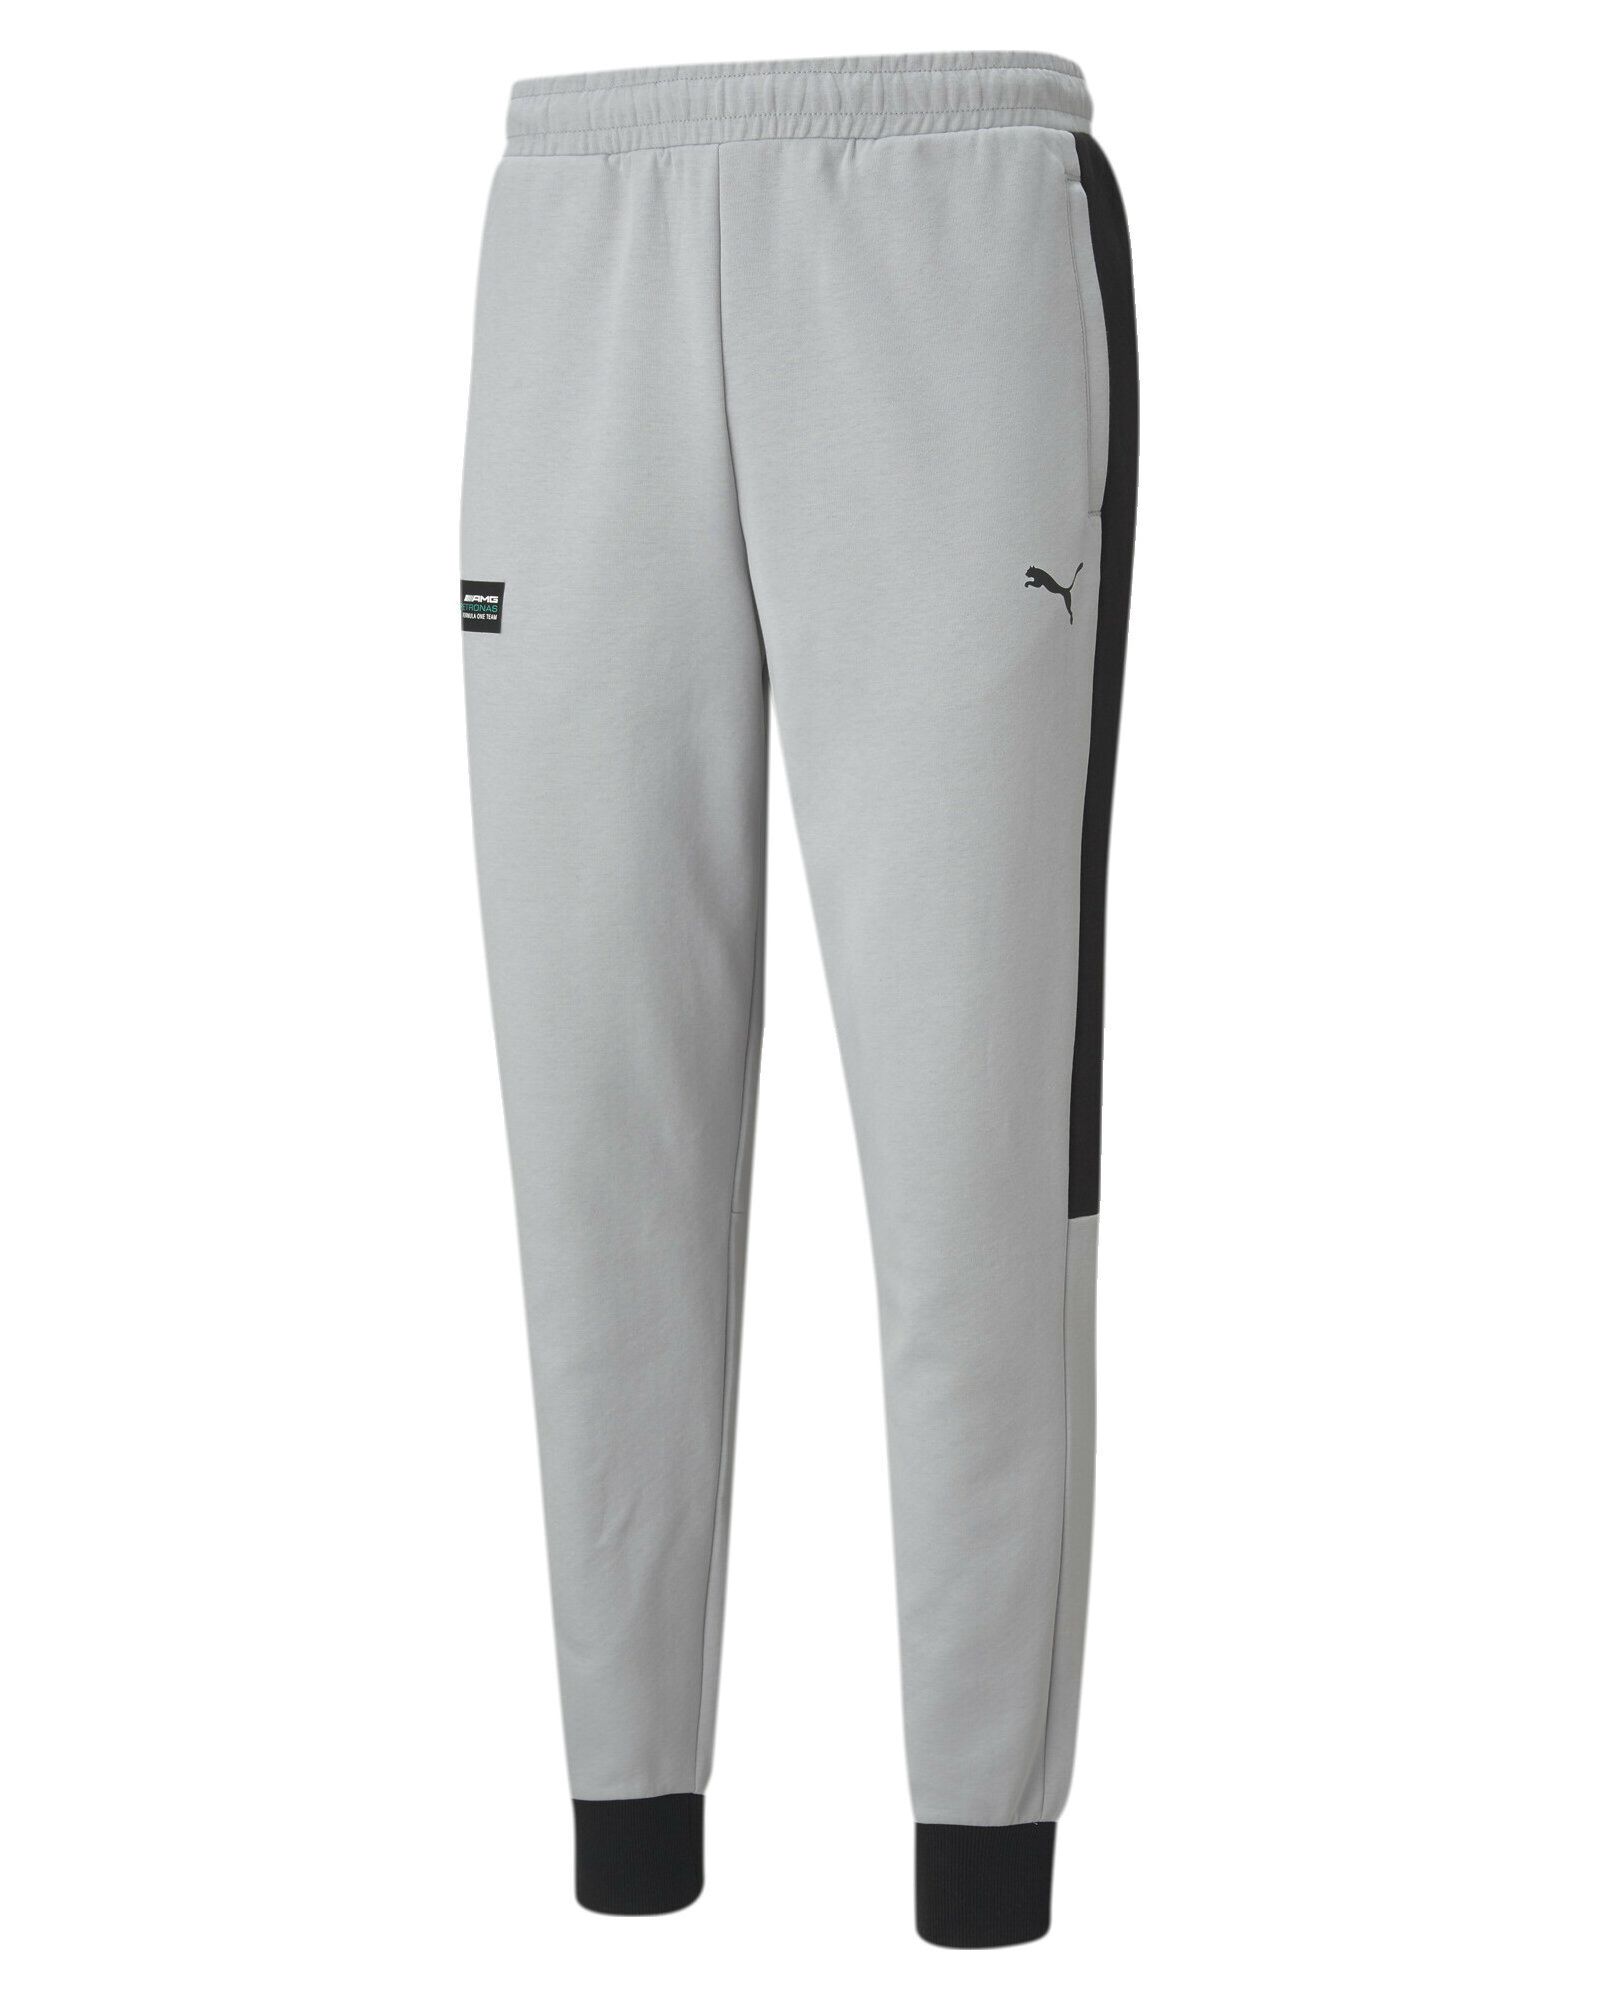 Спортивные брюки мужские PUMA MAPF1 T7 Sweat Pants серые S